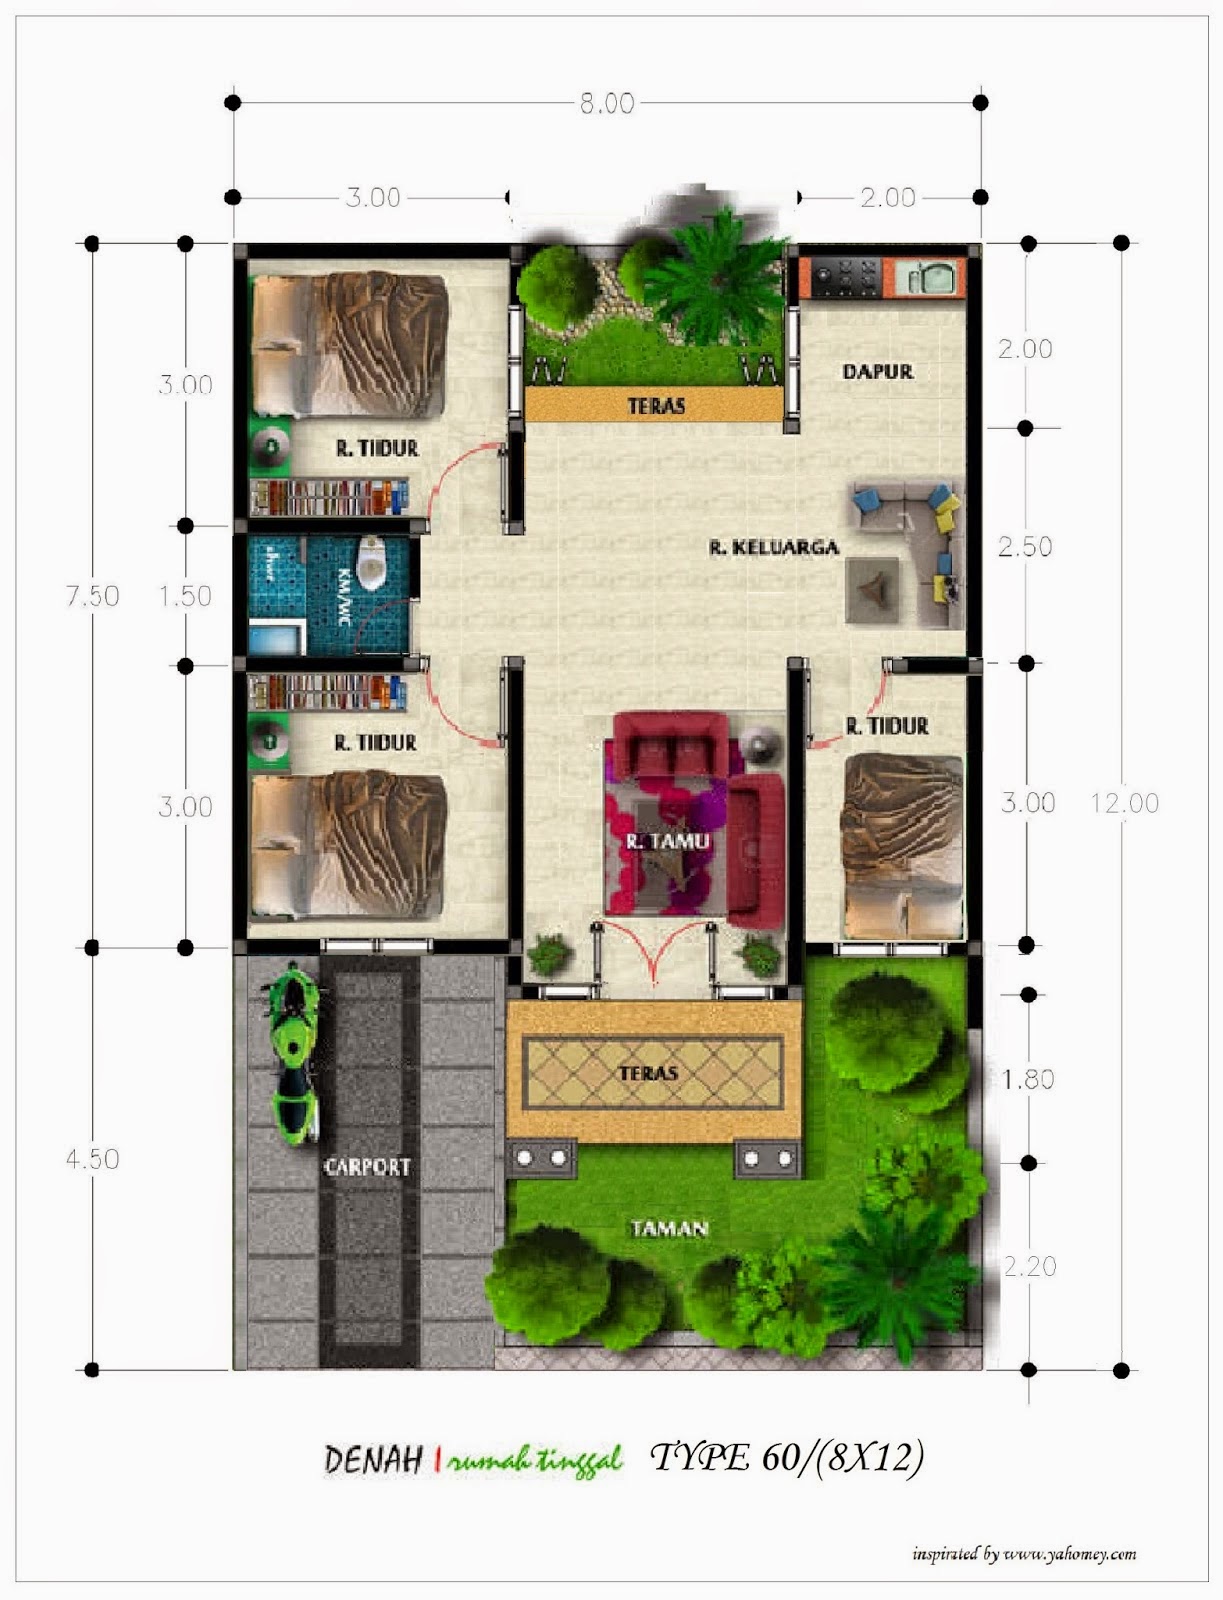 Desain Rumah Minimalis 2 Lantai Luas Tanah 60 Meter - Foto 